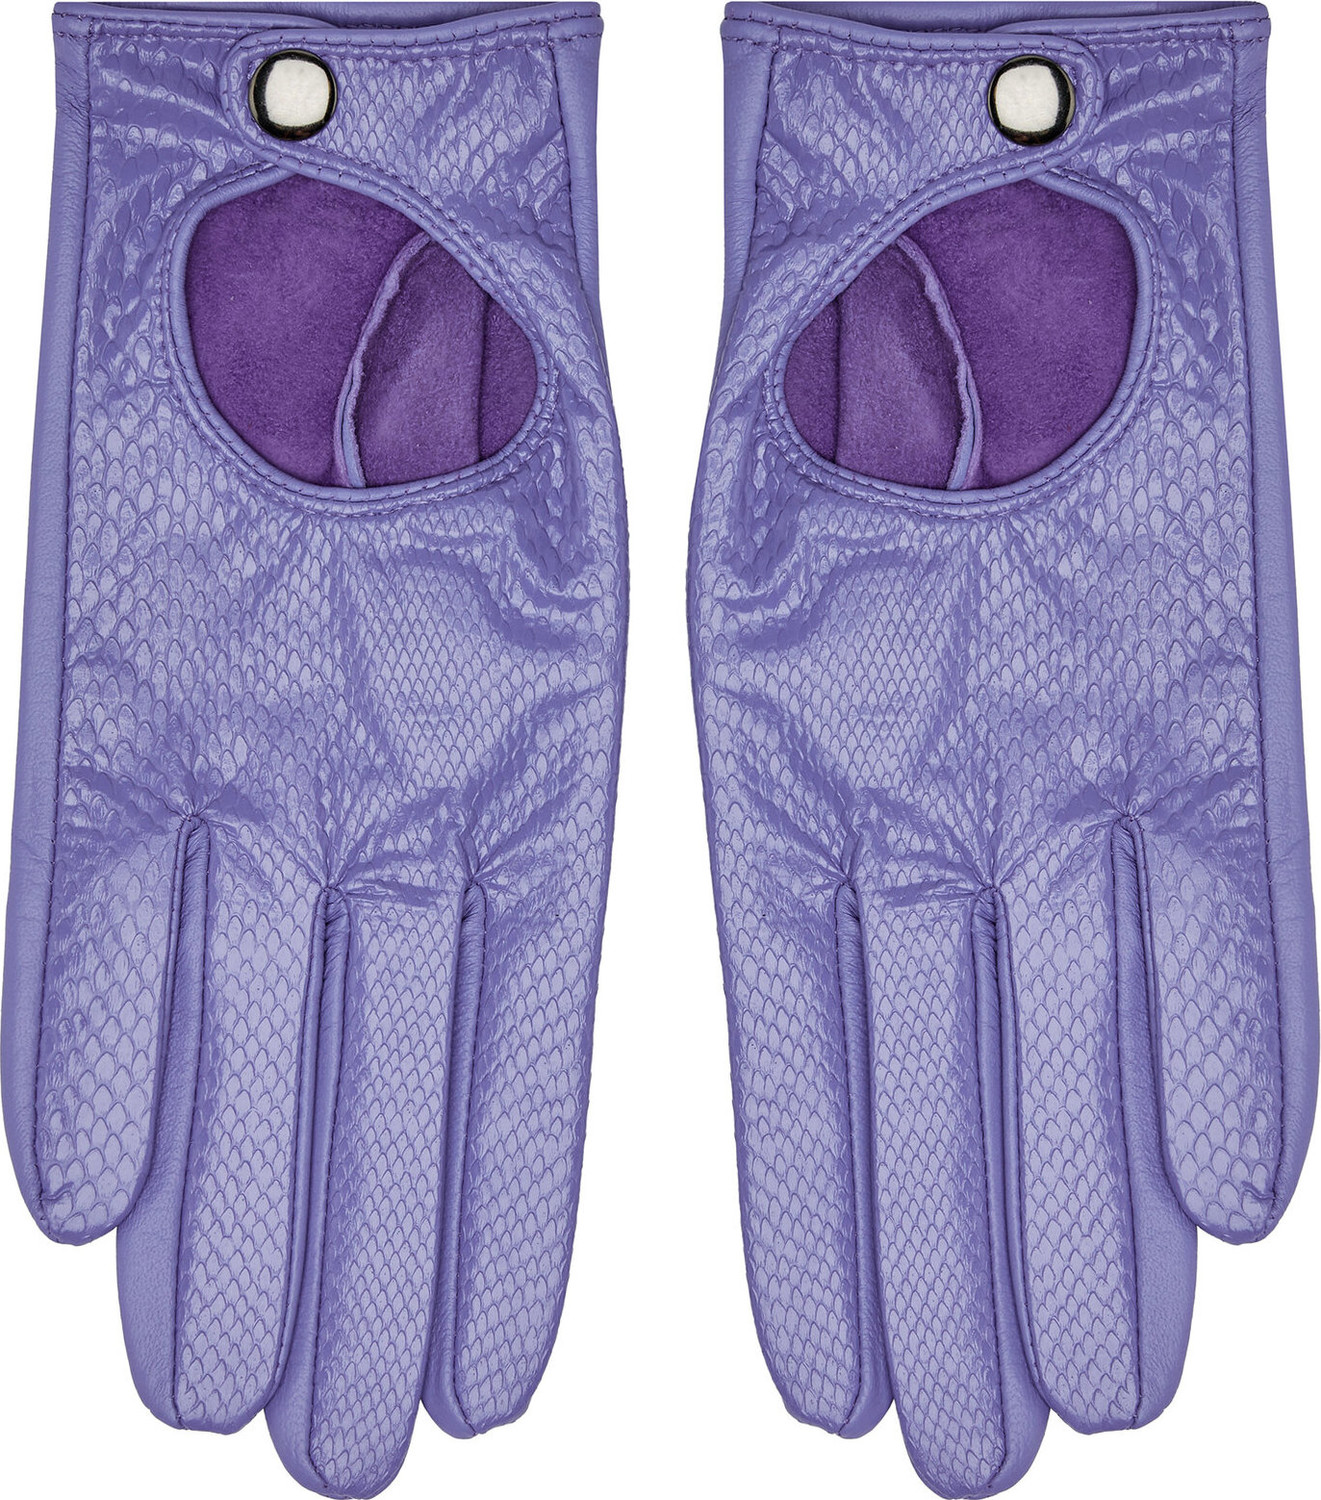 Dámské rukavice WITTCHEN 46-6A-003 FioletF